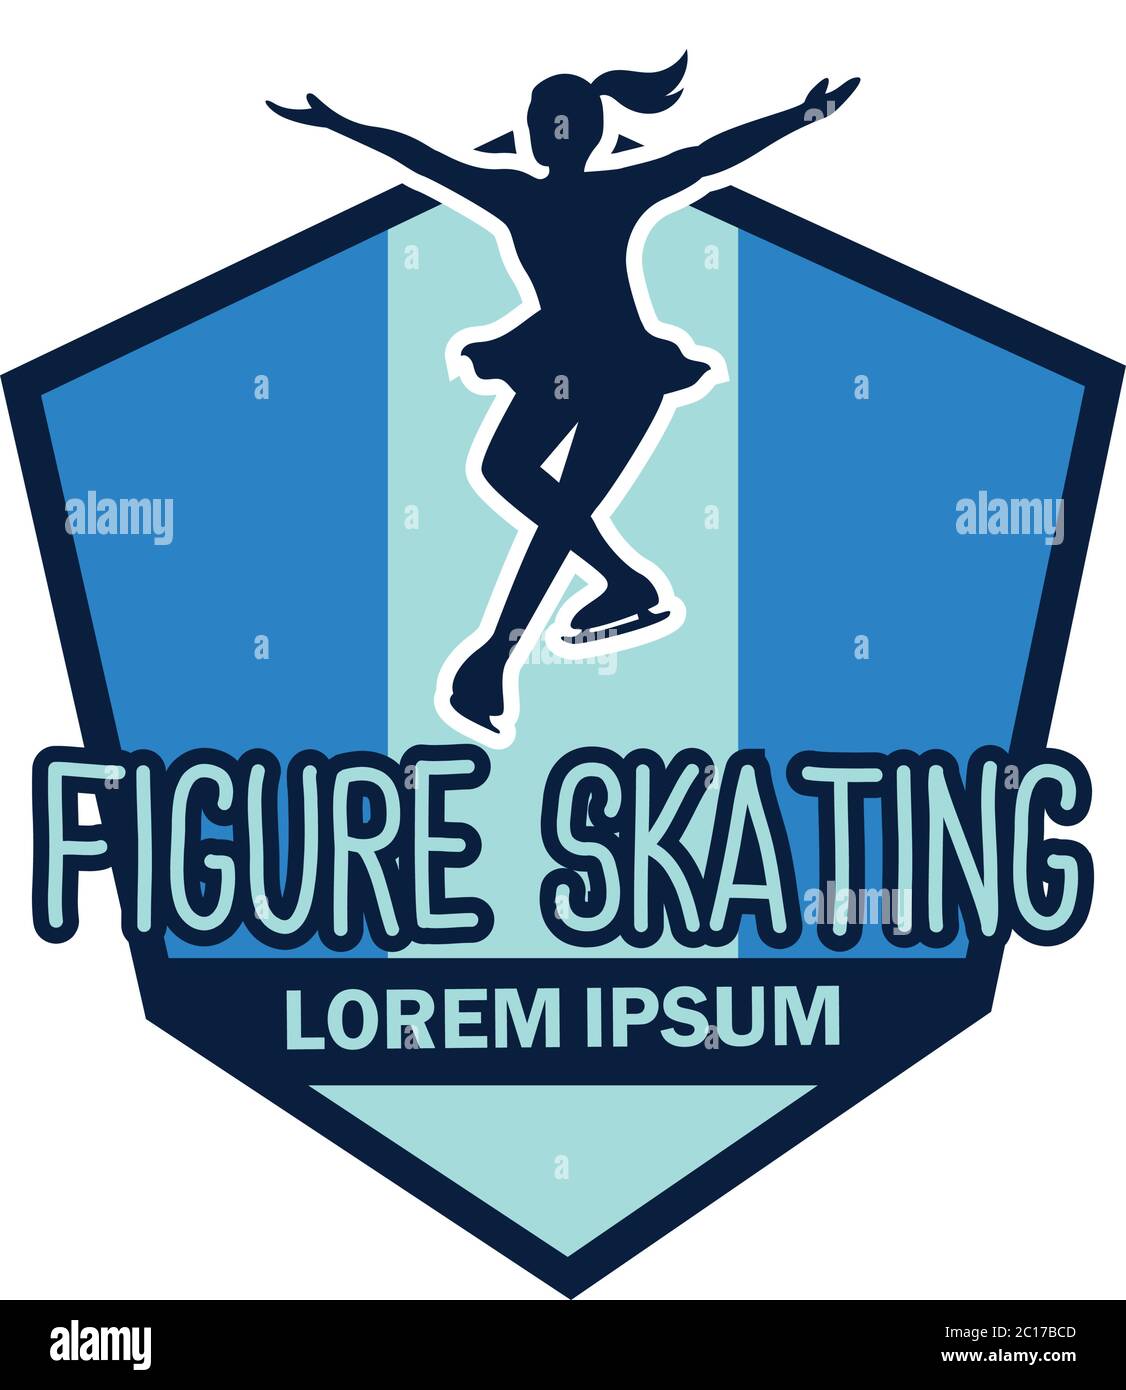 figura velocità skating logo con spazio di testo per il tuo slogan / tag line, illustrazione vettoriale Illustrazione Vettoriale